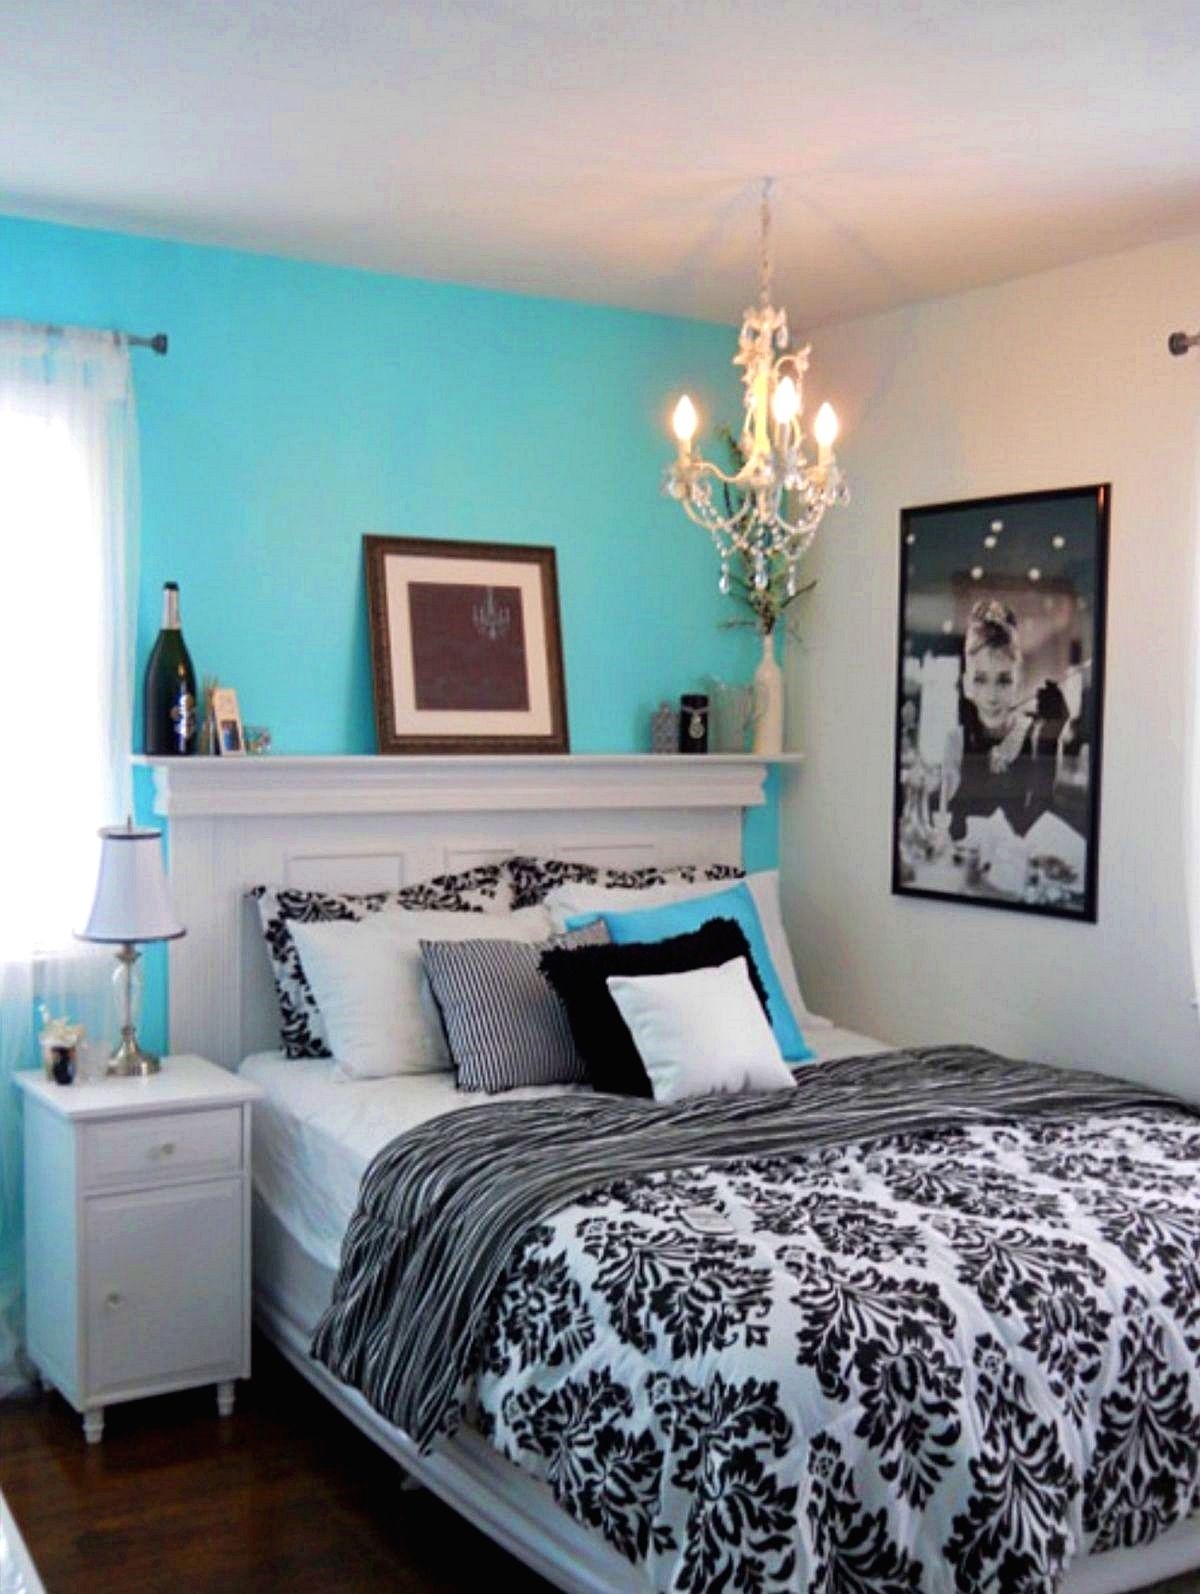 Tiffany blue bedding